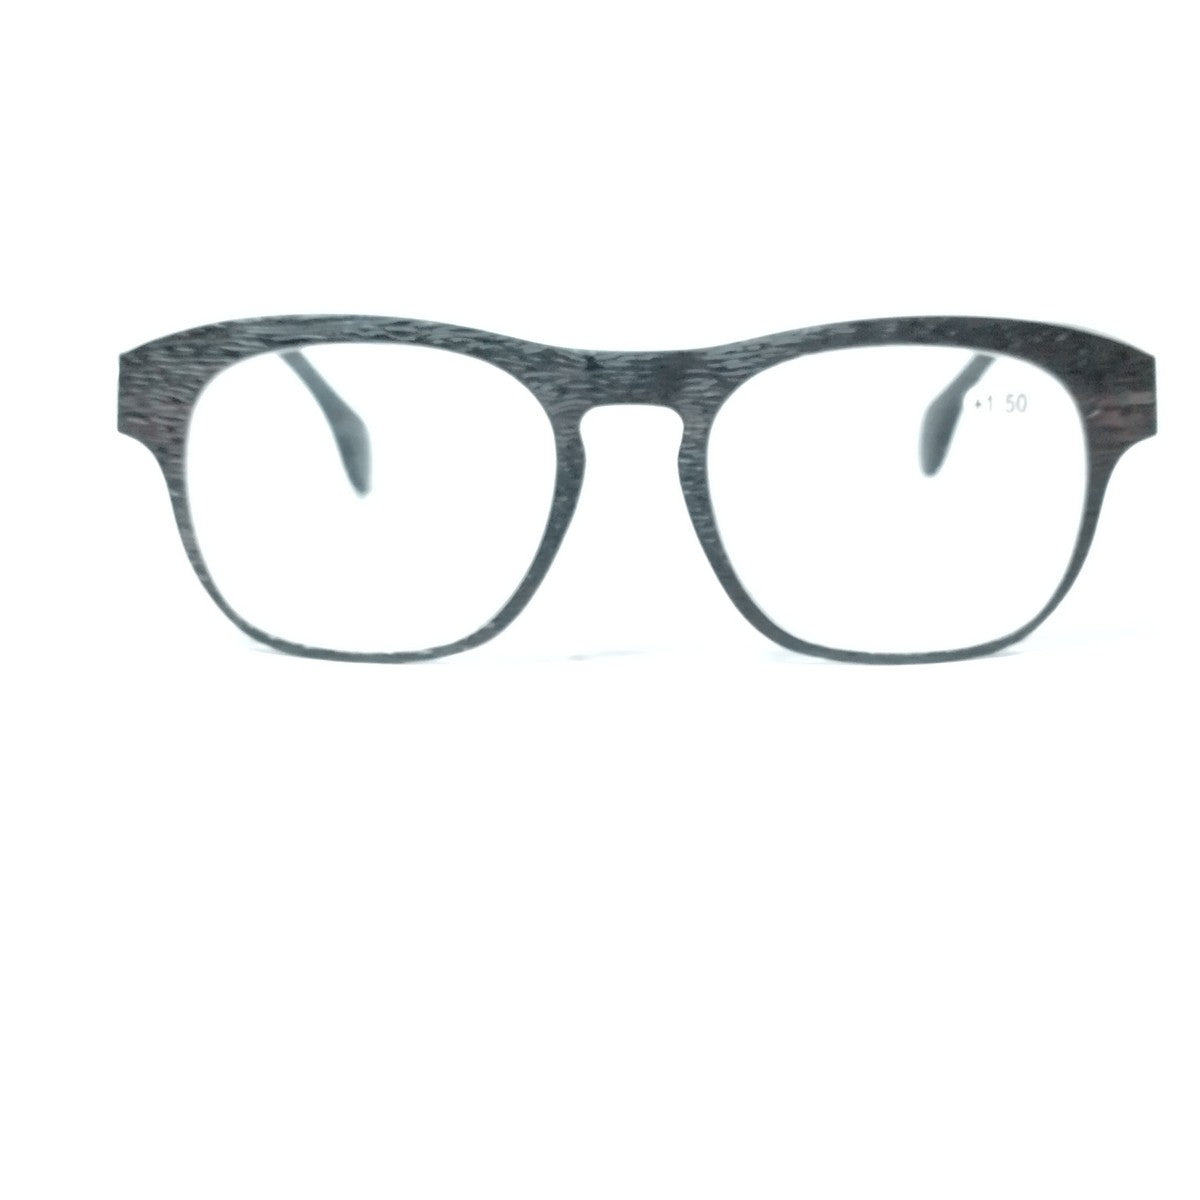 Grey Frame Progressive Glasses for Computers Multifocal Reading Glasses for Men Women